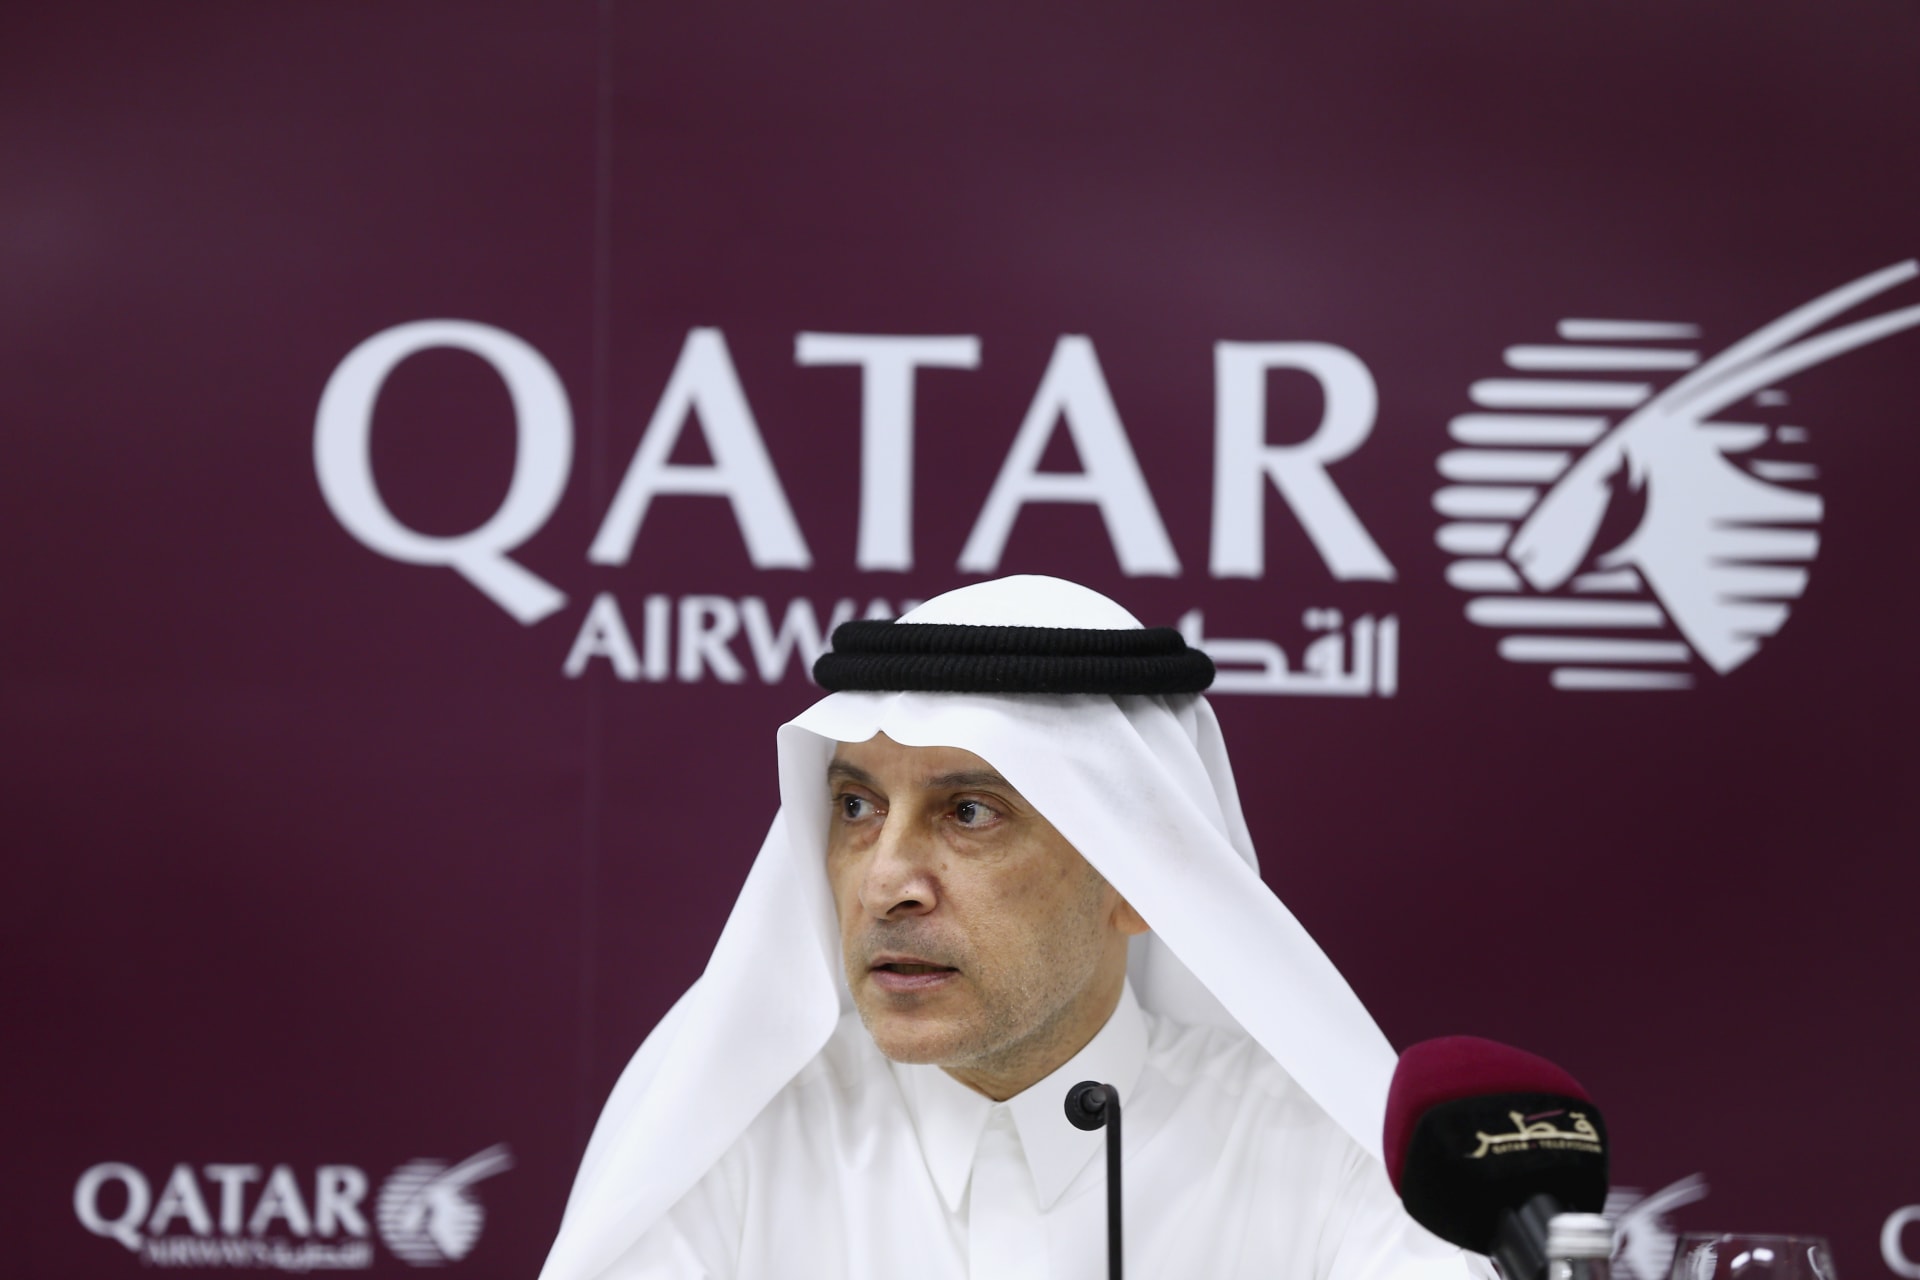 الخطوط الجوية القطرية توقف مشروع طيران المها في السعودية ومغردون يرفضون "البيروقراطية"